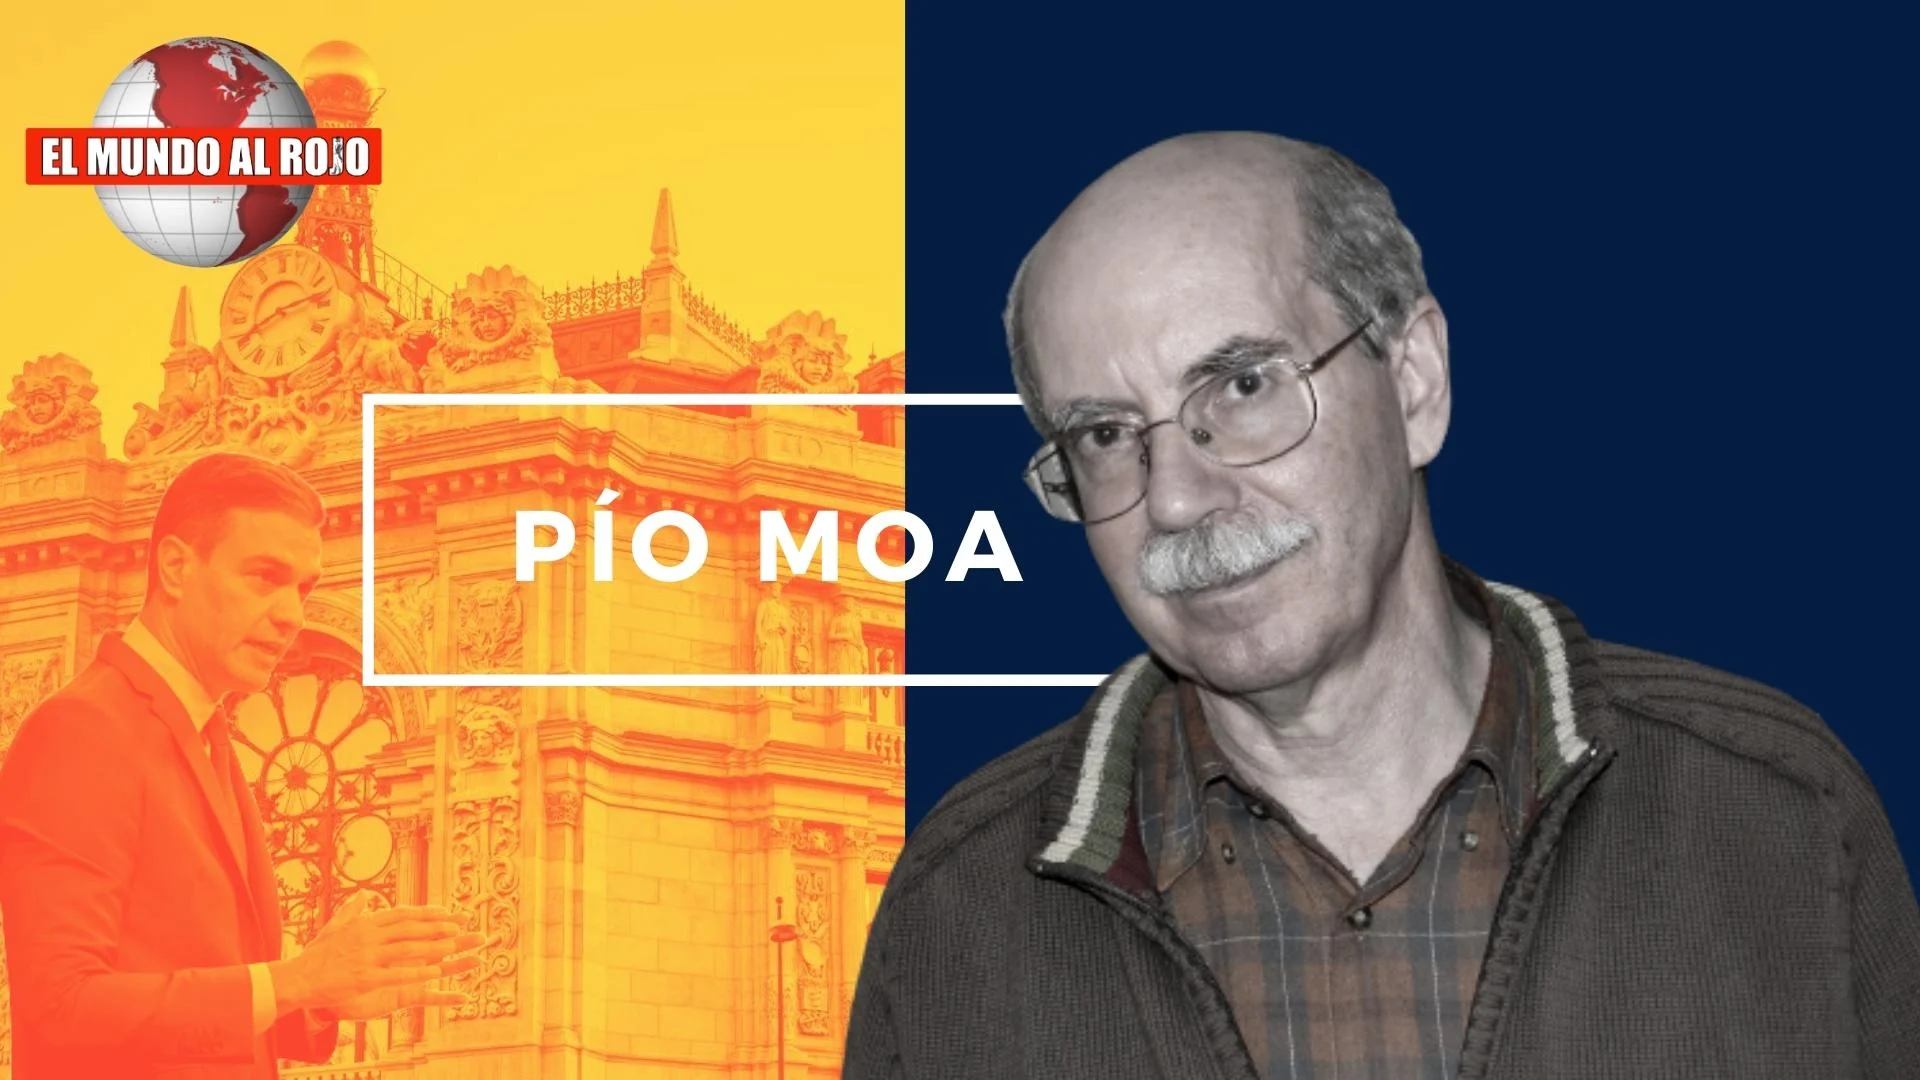 Pío Moa